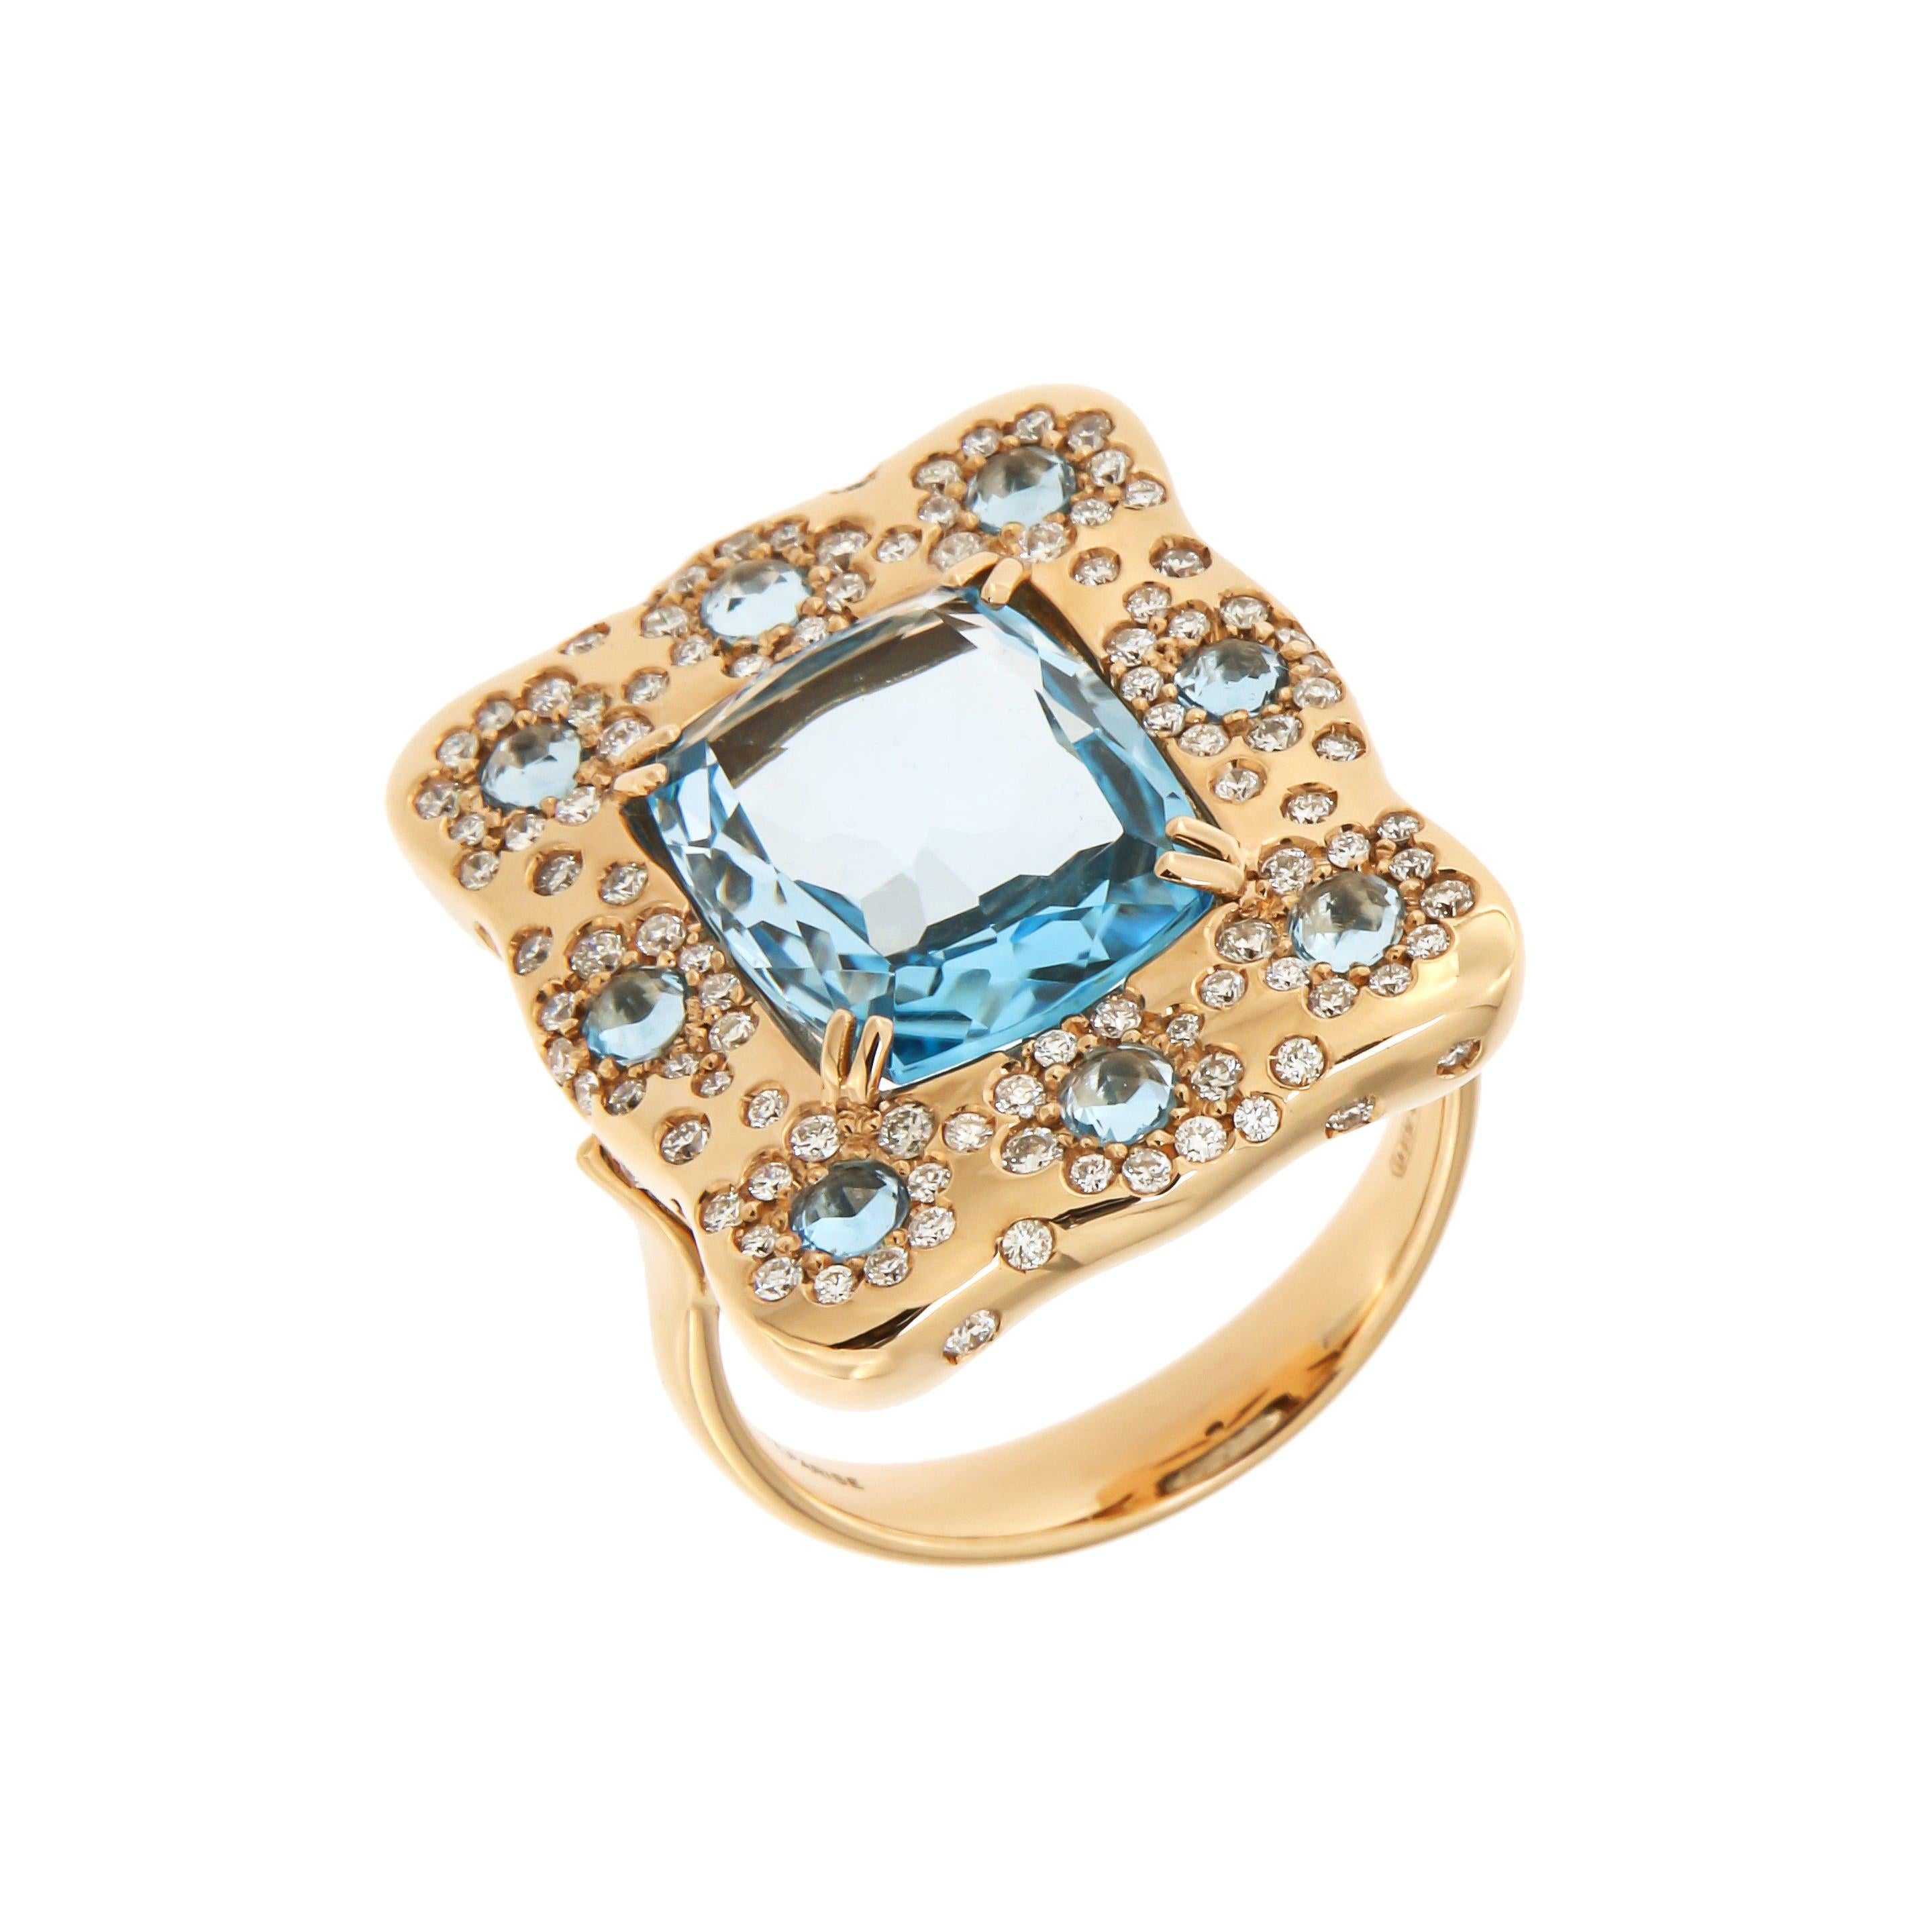 Italian Designer 18K London Blue Topaz Diamonds Rose Gold Ring for Her